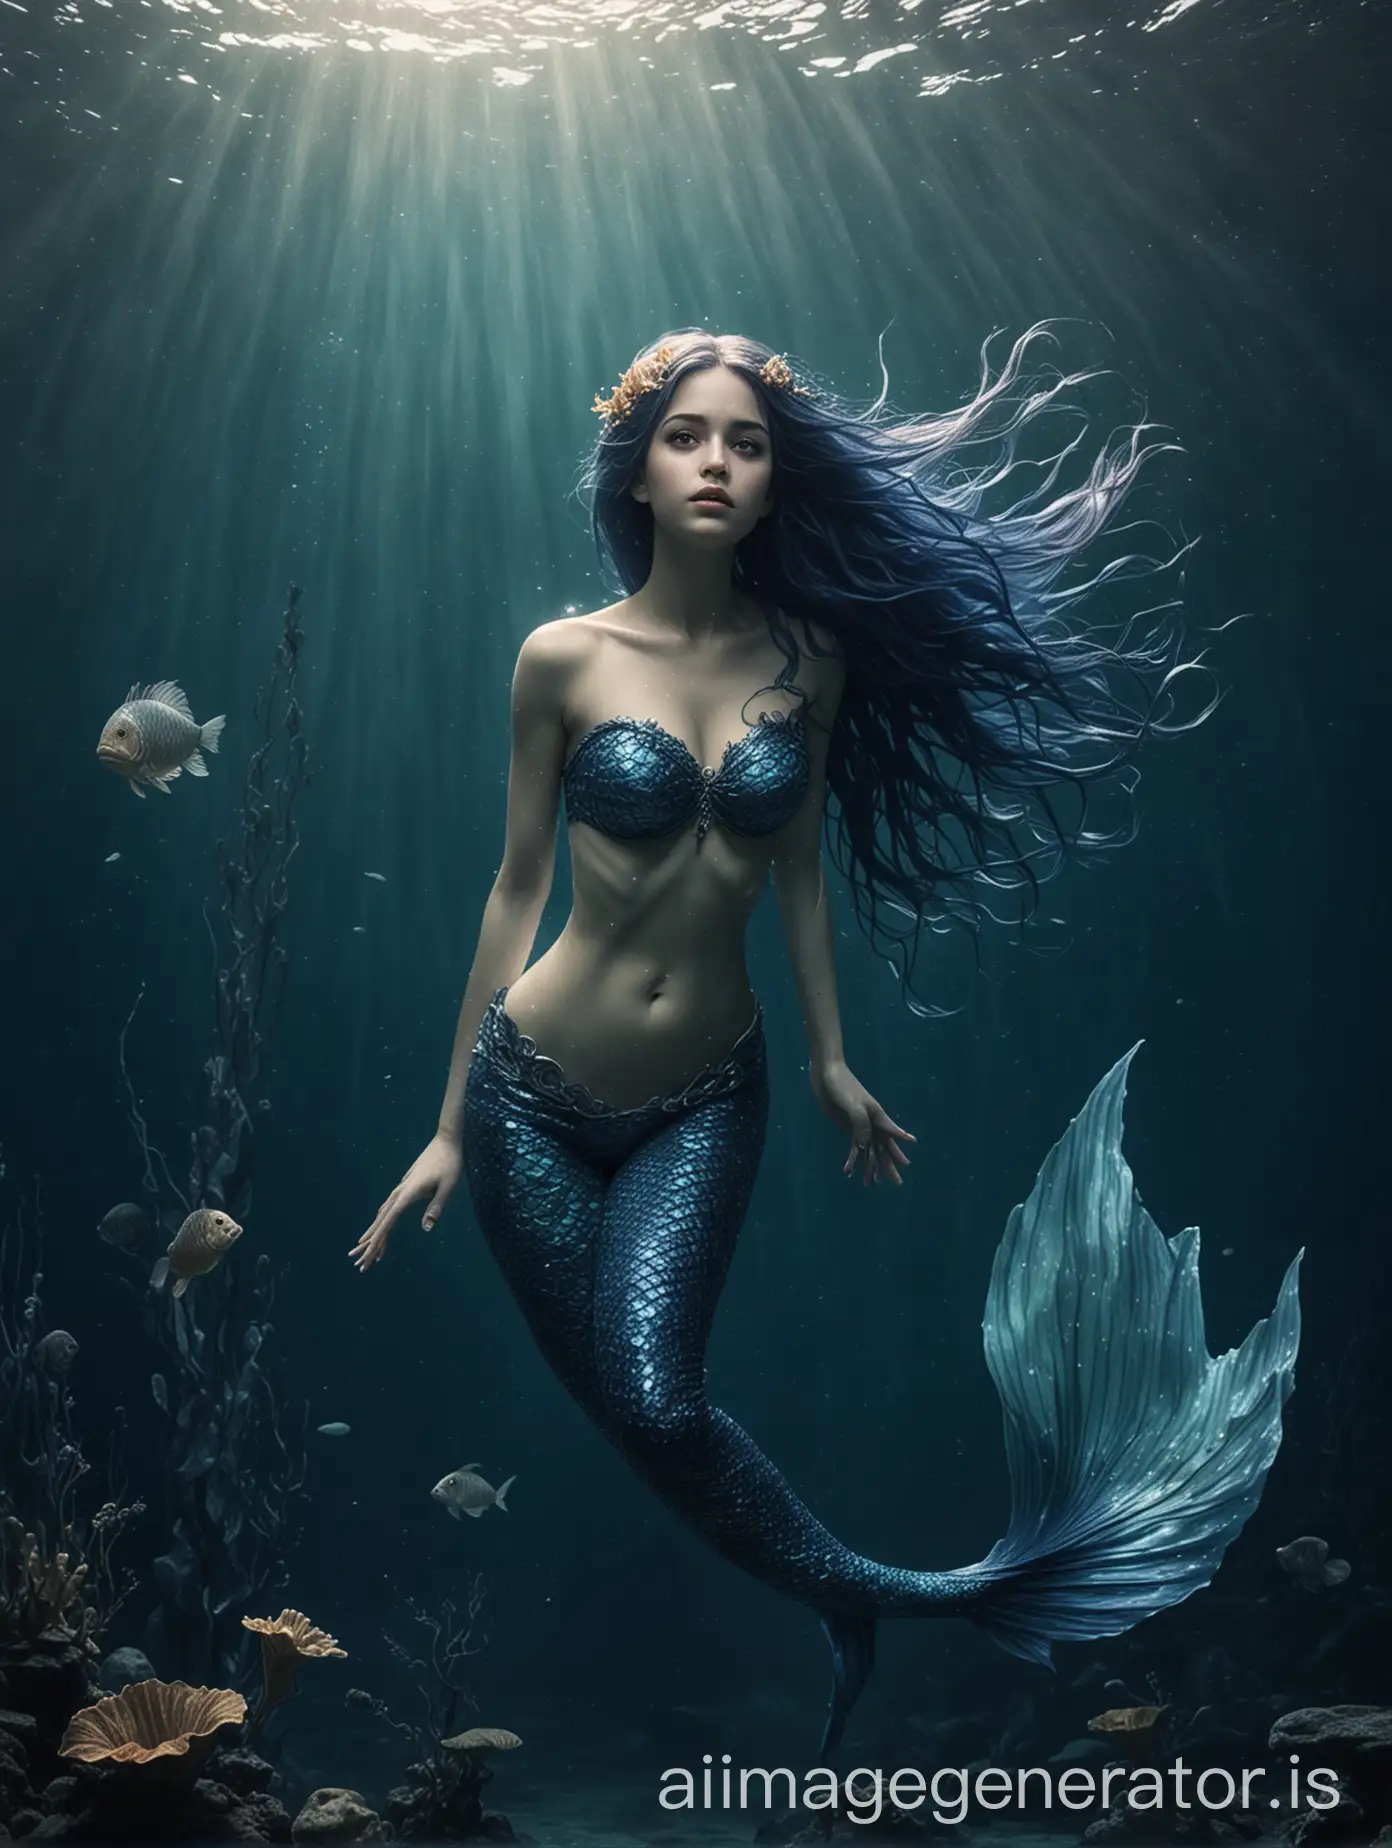 putri duyung dengan ekor warna biru gelap berenang di dasar laut dengan sedih